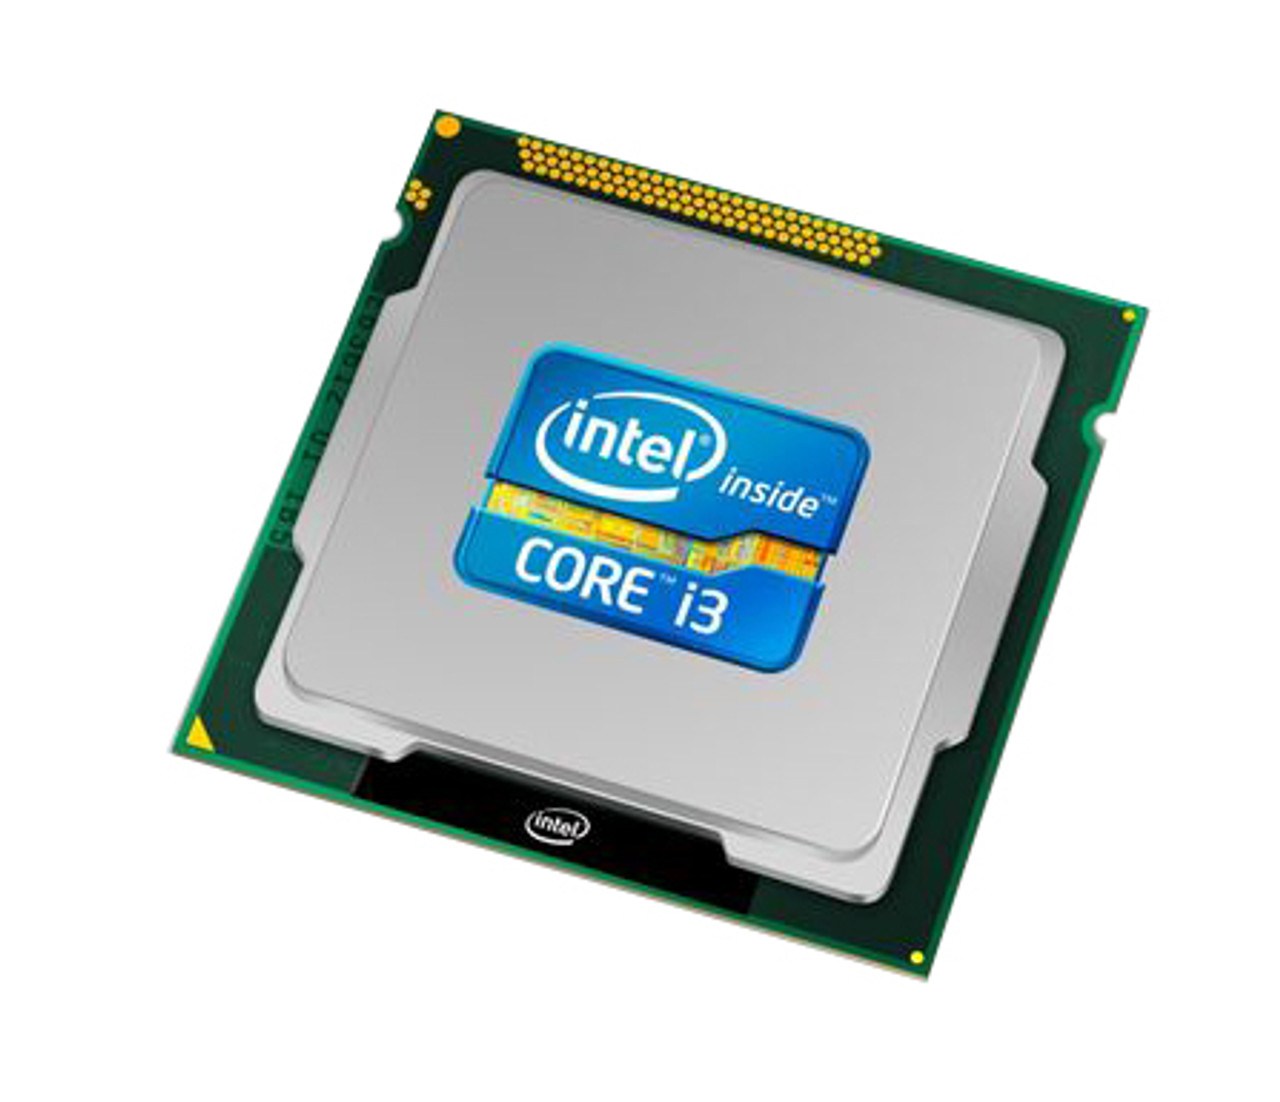 i3-4025U Intel Core i3 Dual Core 1.90GHz 5.00GT/s DMI2 3MB L3 Cache Mobile Processor